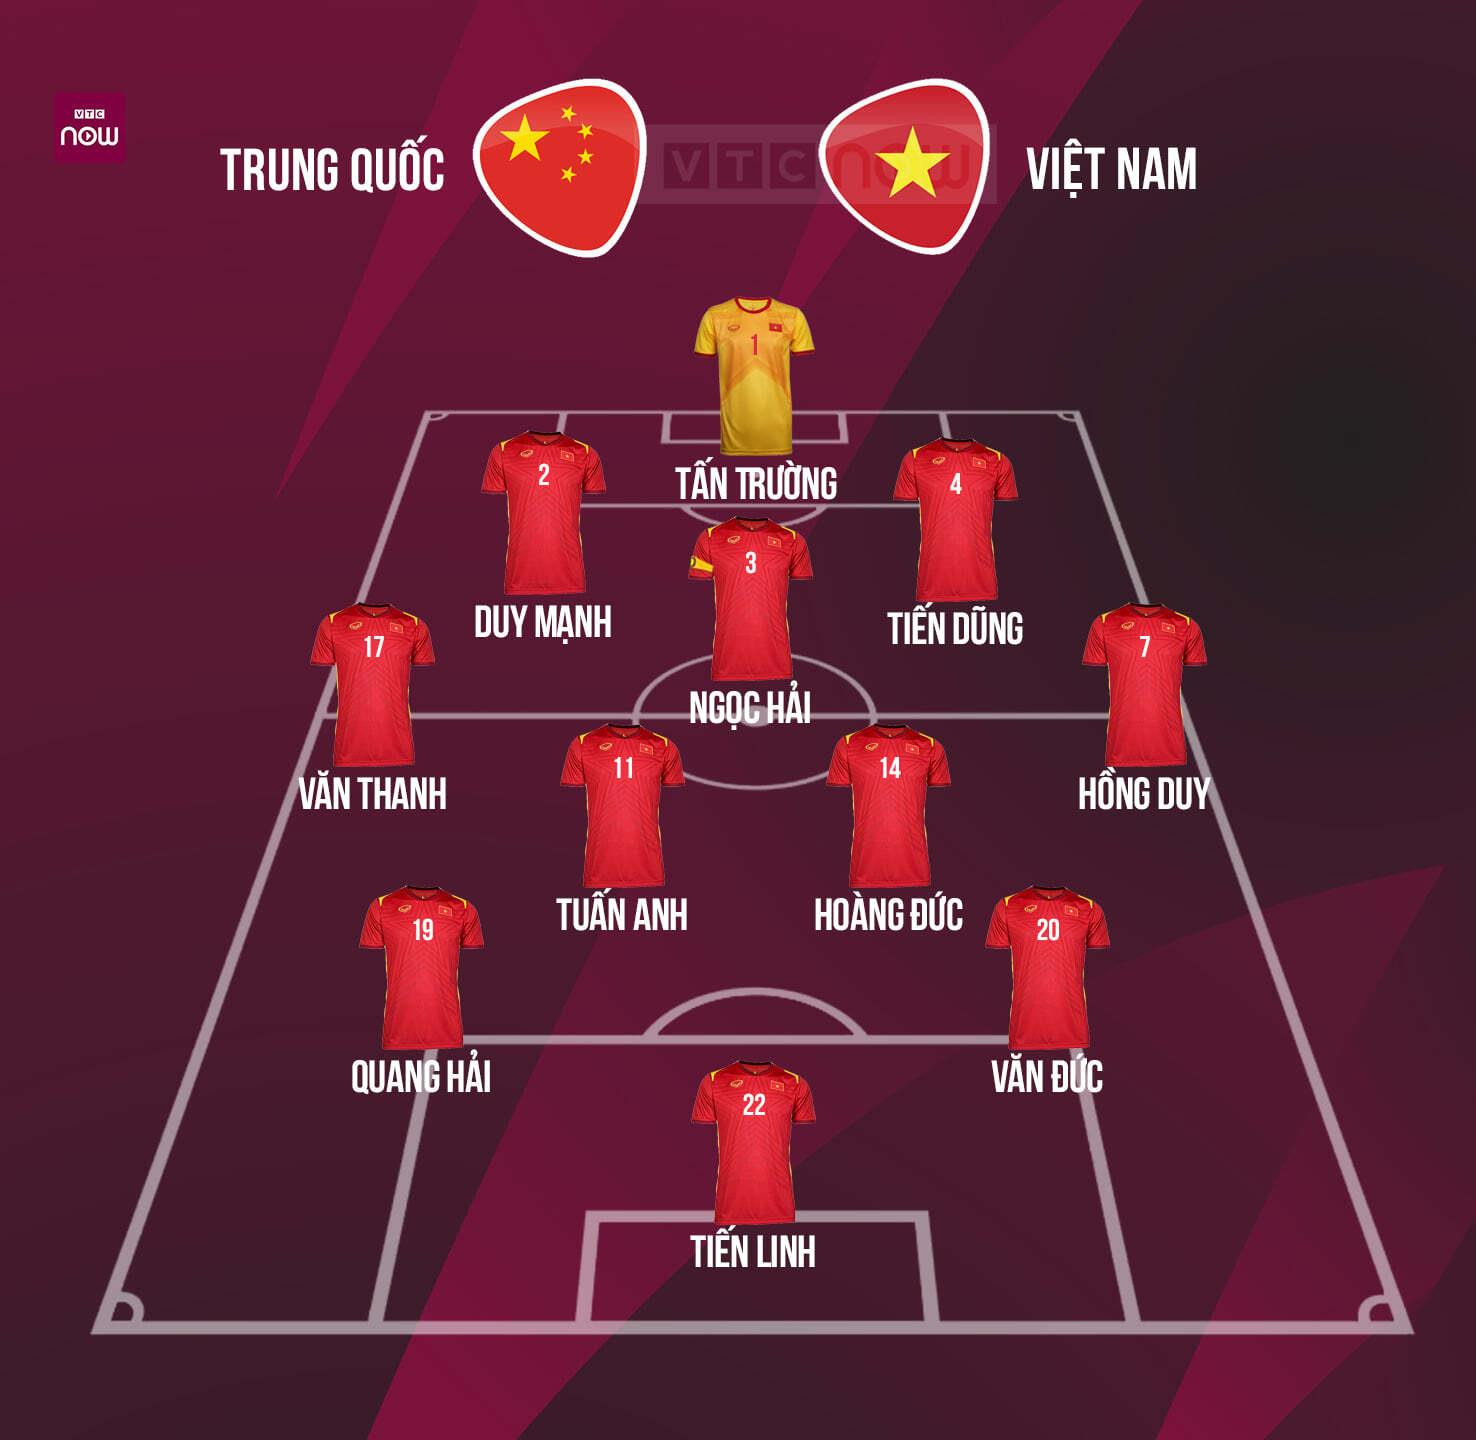 Đội hình tuyển Việt Nam đấu Trung Quốc: Phan Văn Đức đá chính, Công Phượng dự bị - 1